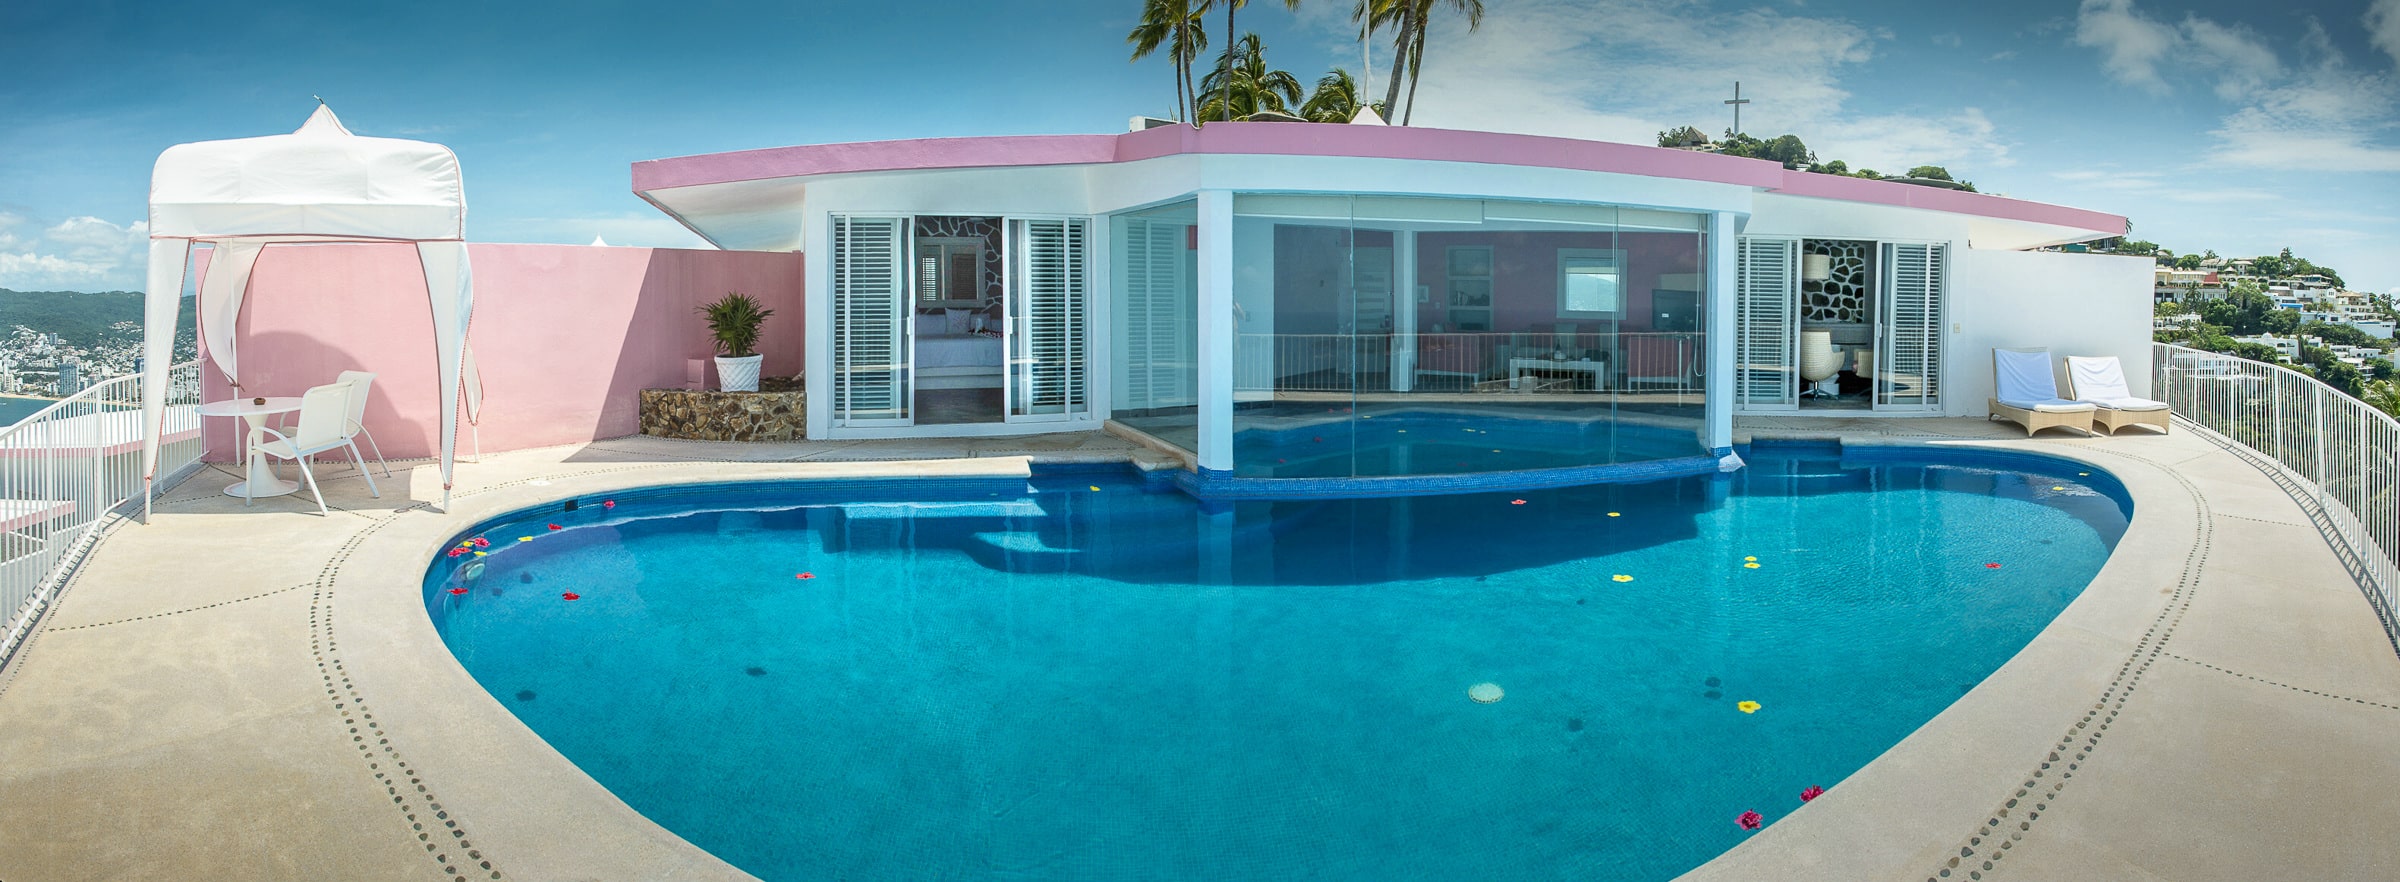 Hotel Las Brisas Acapulco Master Suite with Indoor/Outdoor pool